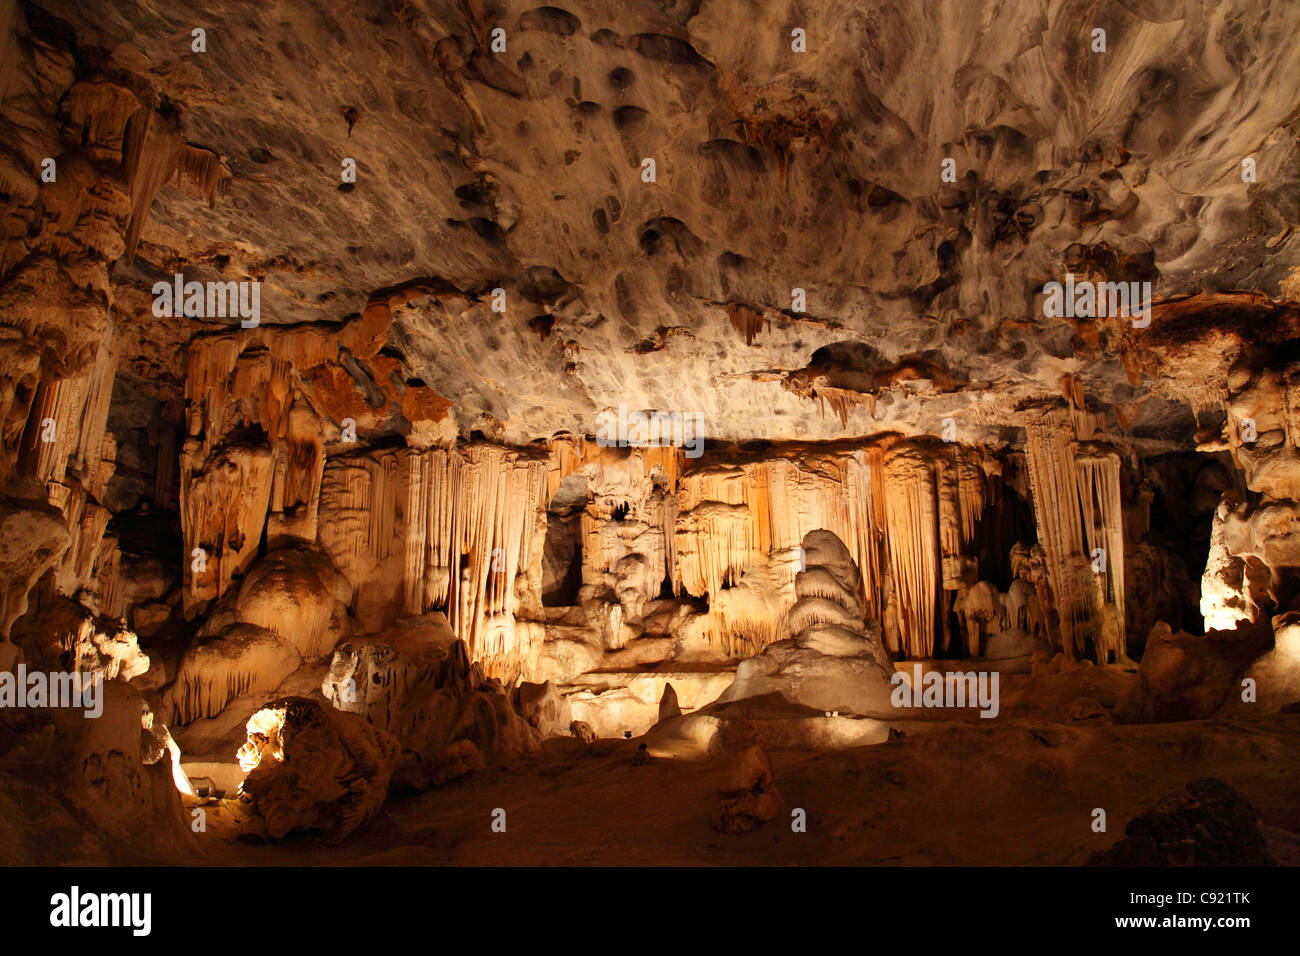 Die Cango Caves bei Oudtshoorn sind eine sehr beliebte Touristenattraktion, da sie spektakulären Hallen und grand Kalkstein enthalten Stockfoto